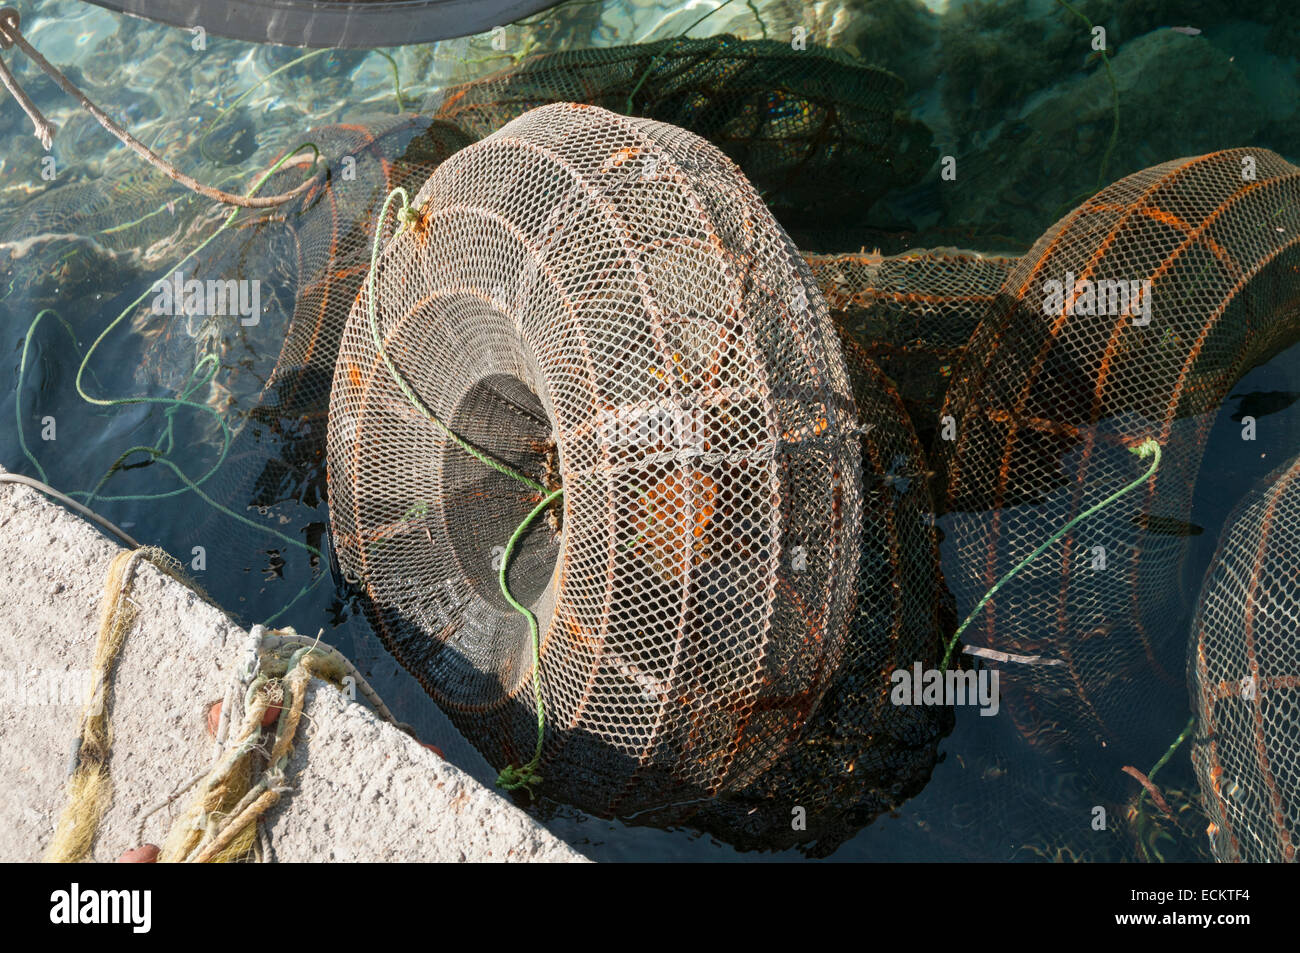 Les filets de pêche sous la forme d'une cage ronde dans l'eau Banque D'Images